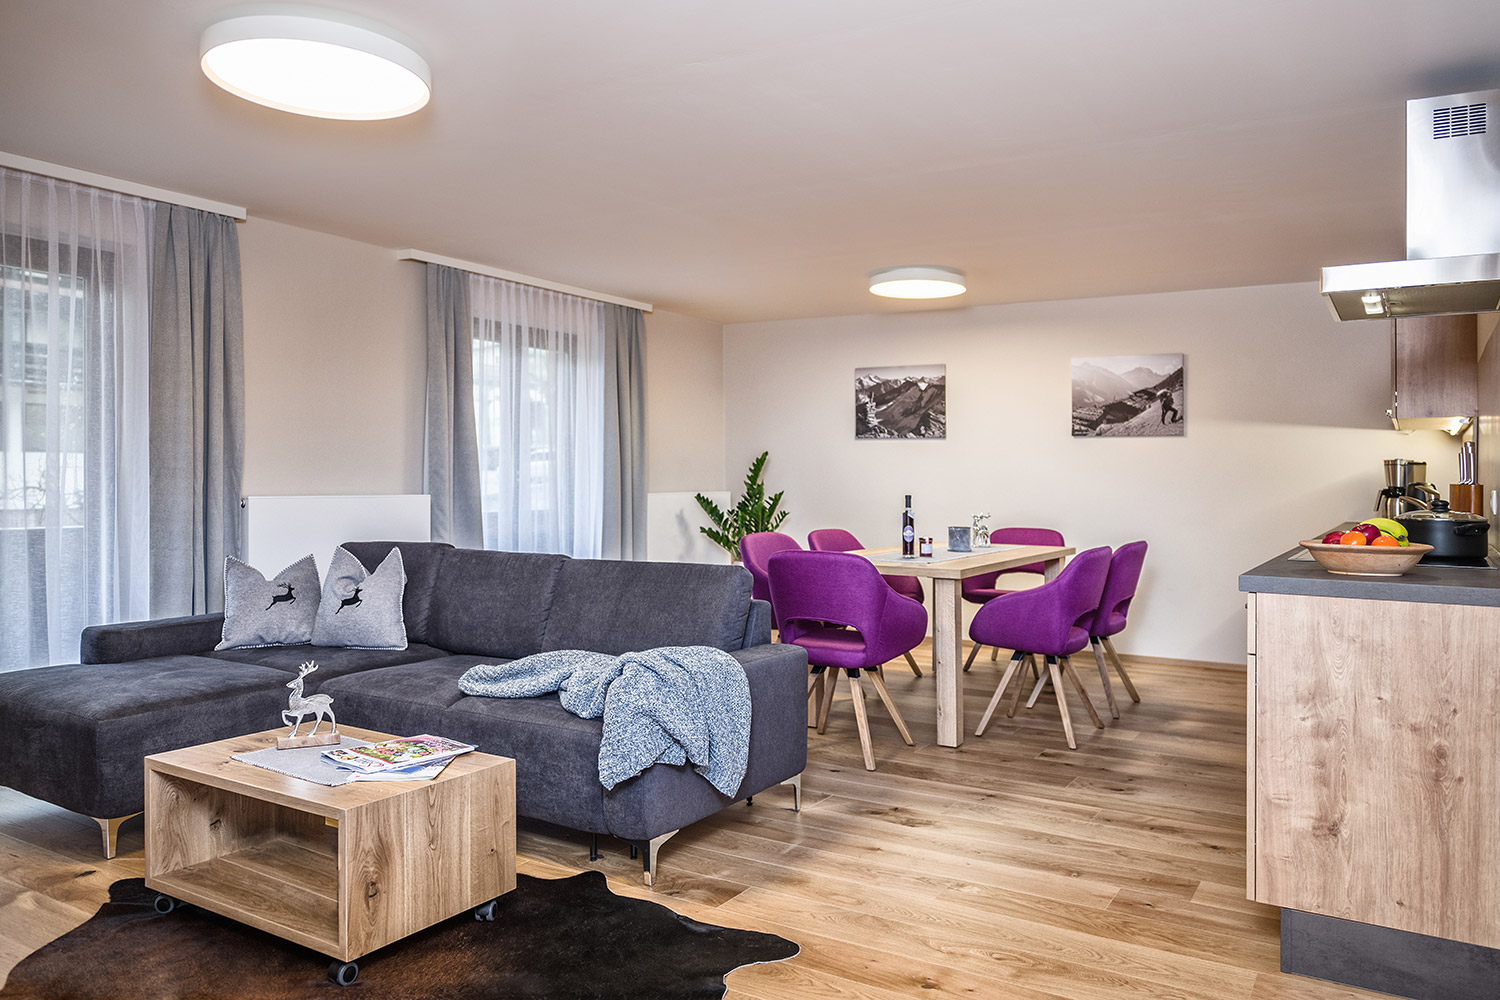 Apartment Reinhart Fügen im Zillertal: Gemütlicher Flair im Wohn-Esszimmer